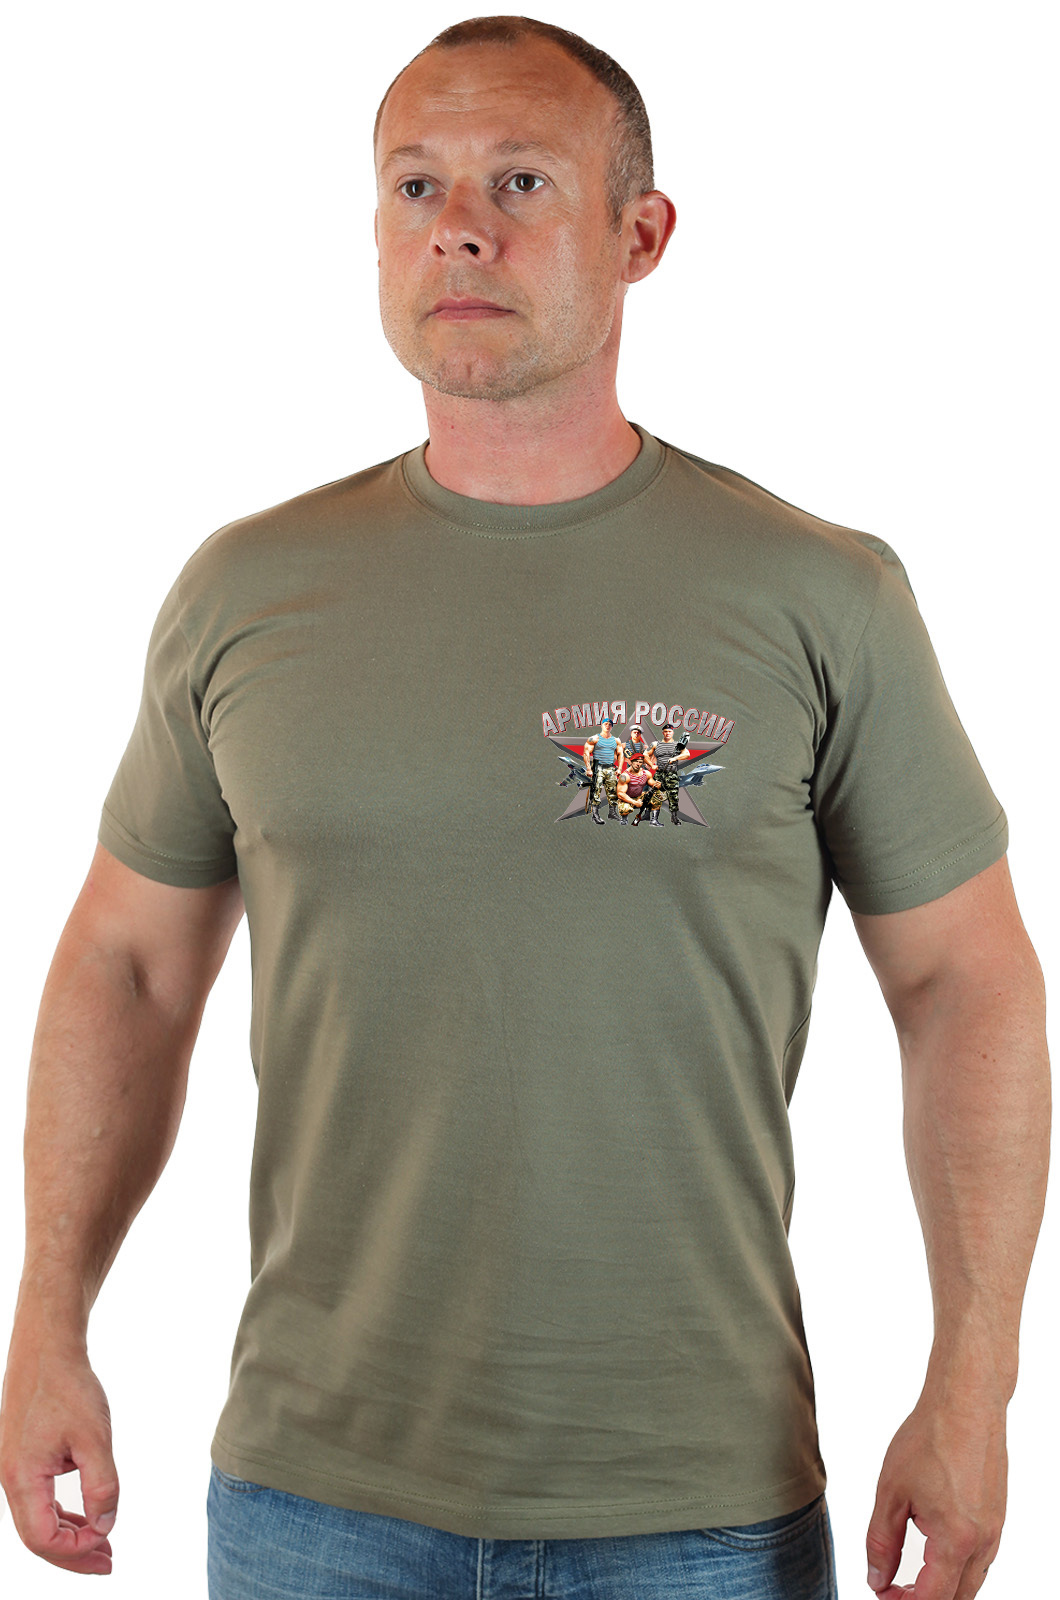 Удобная оливковая футболка с символикой Армии России 